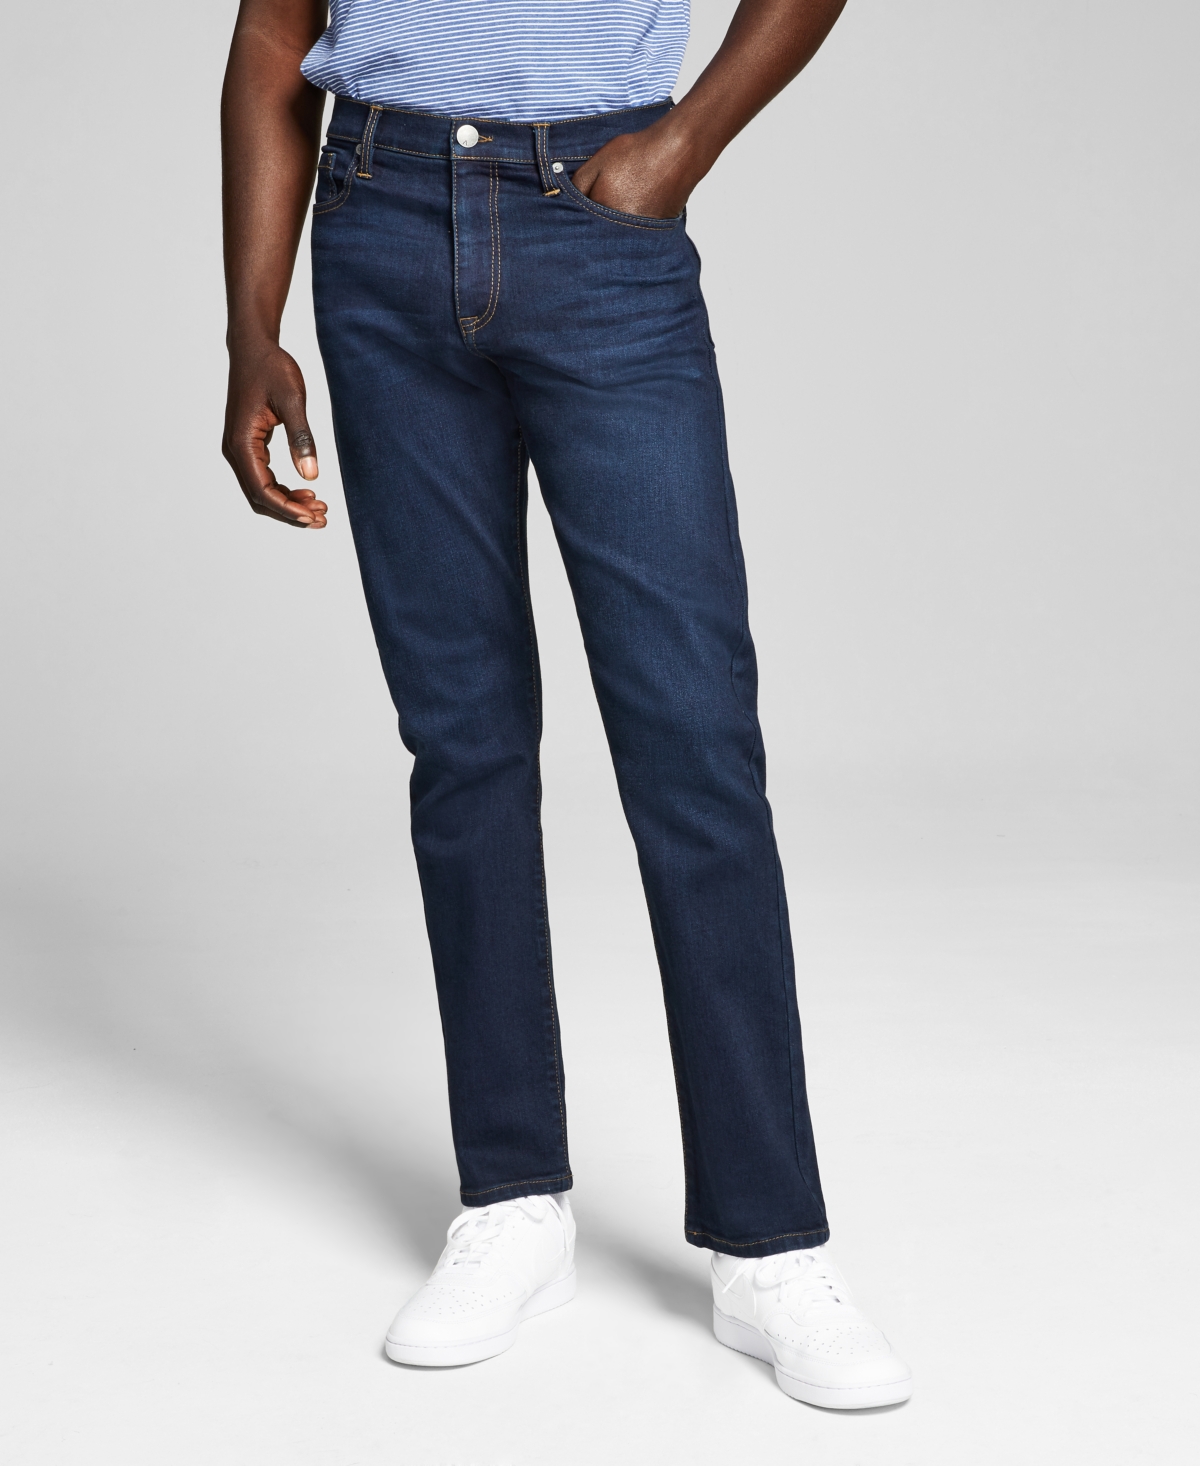 Men's Slim-Fit Stretch Jeans - Super Light Blue Wash